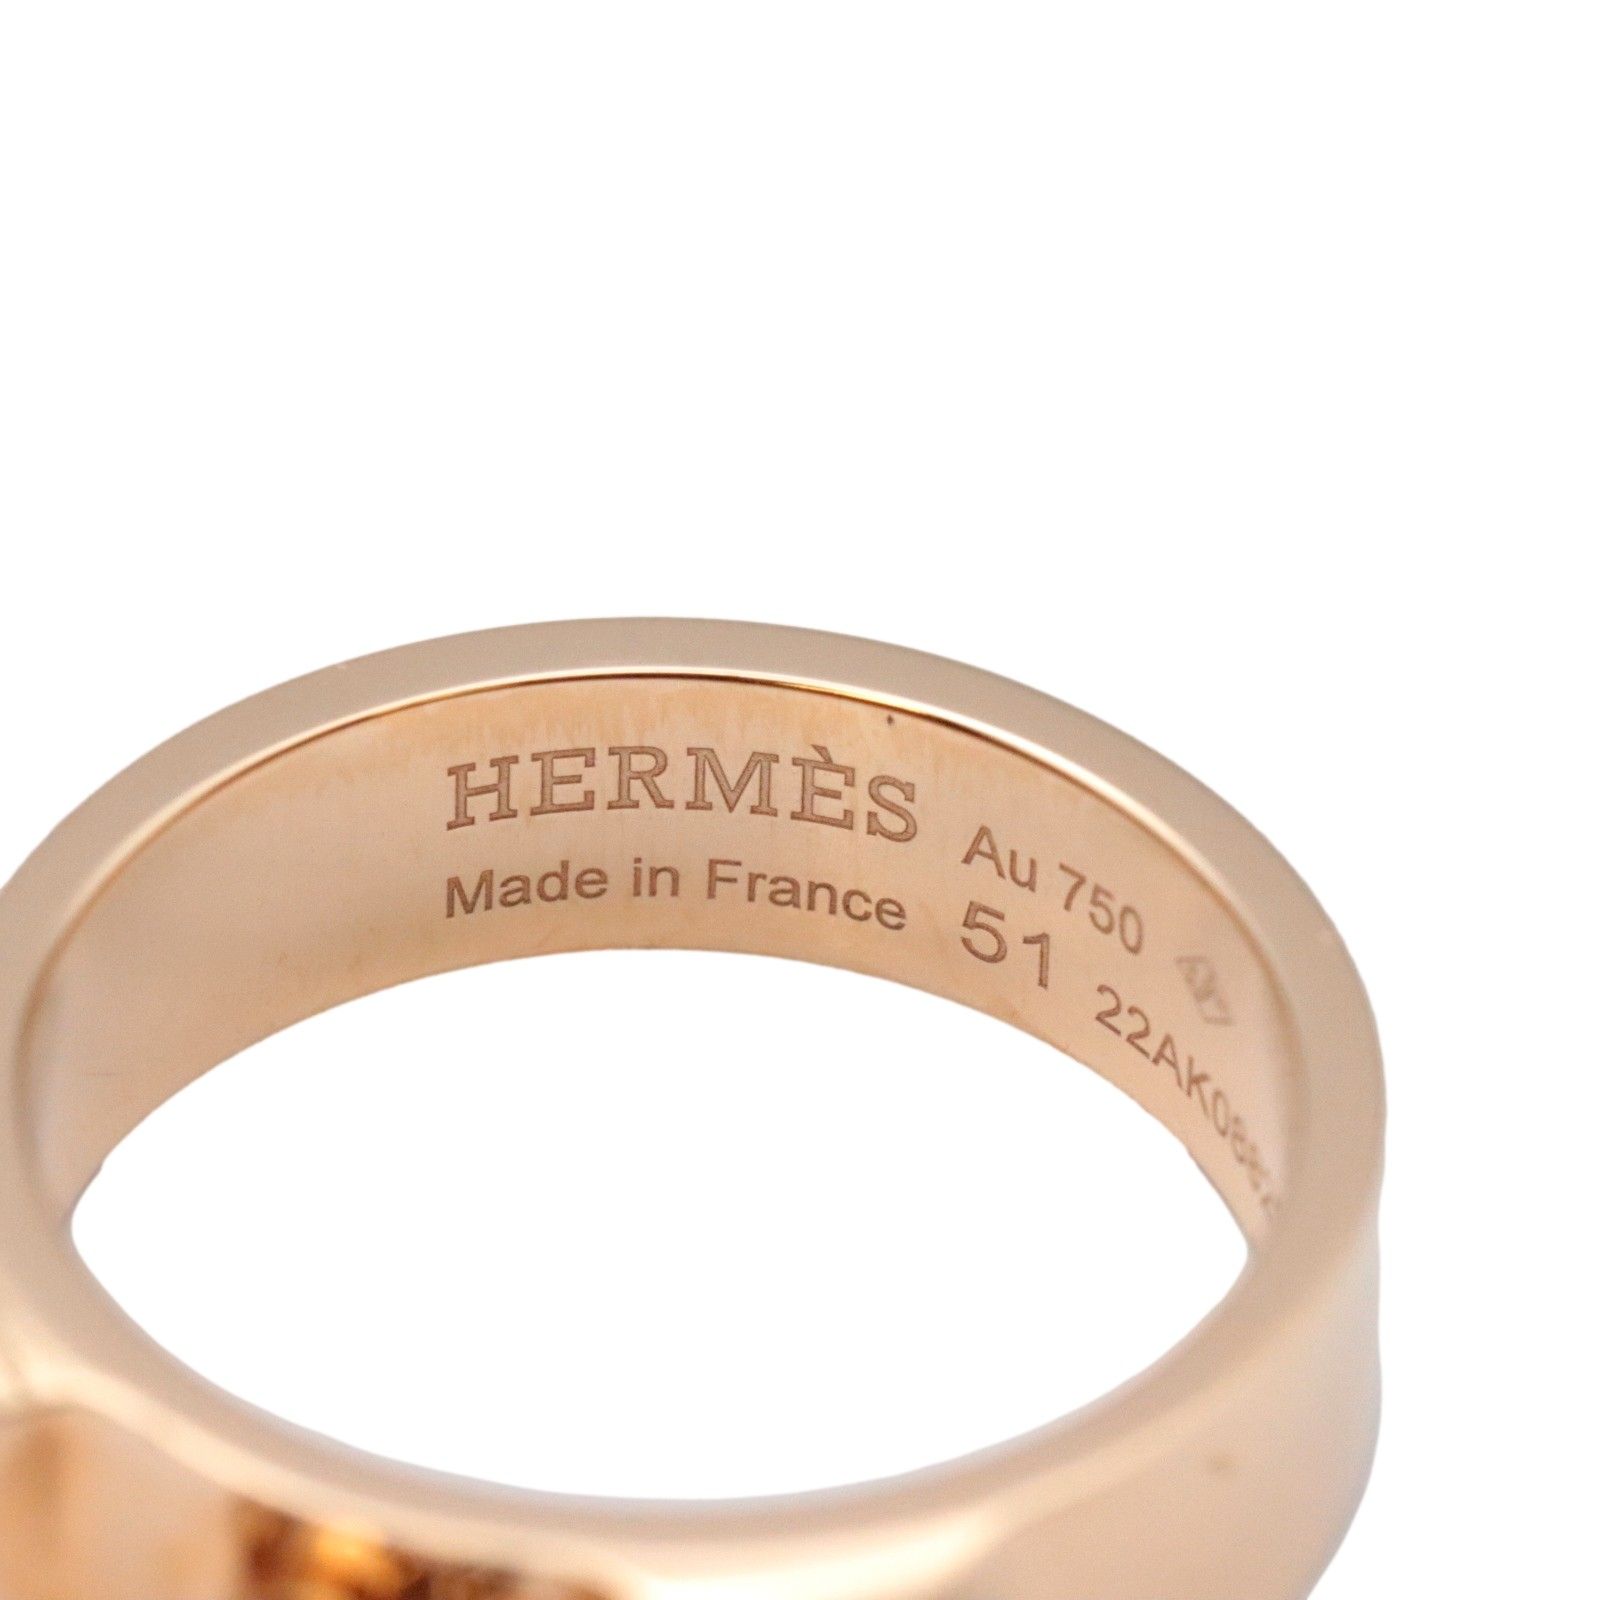 美品 エルメス コリエドシアンPM リング #51 11号 Au750 K18PG ピンクゴールド レディース 指輪 ジュエリー HERMES